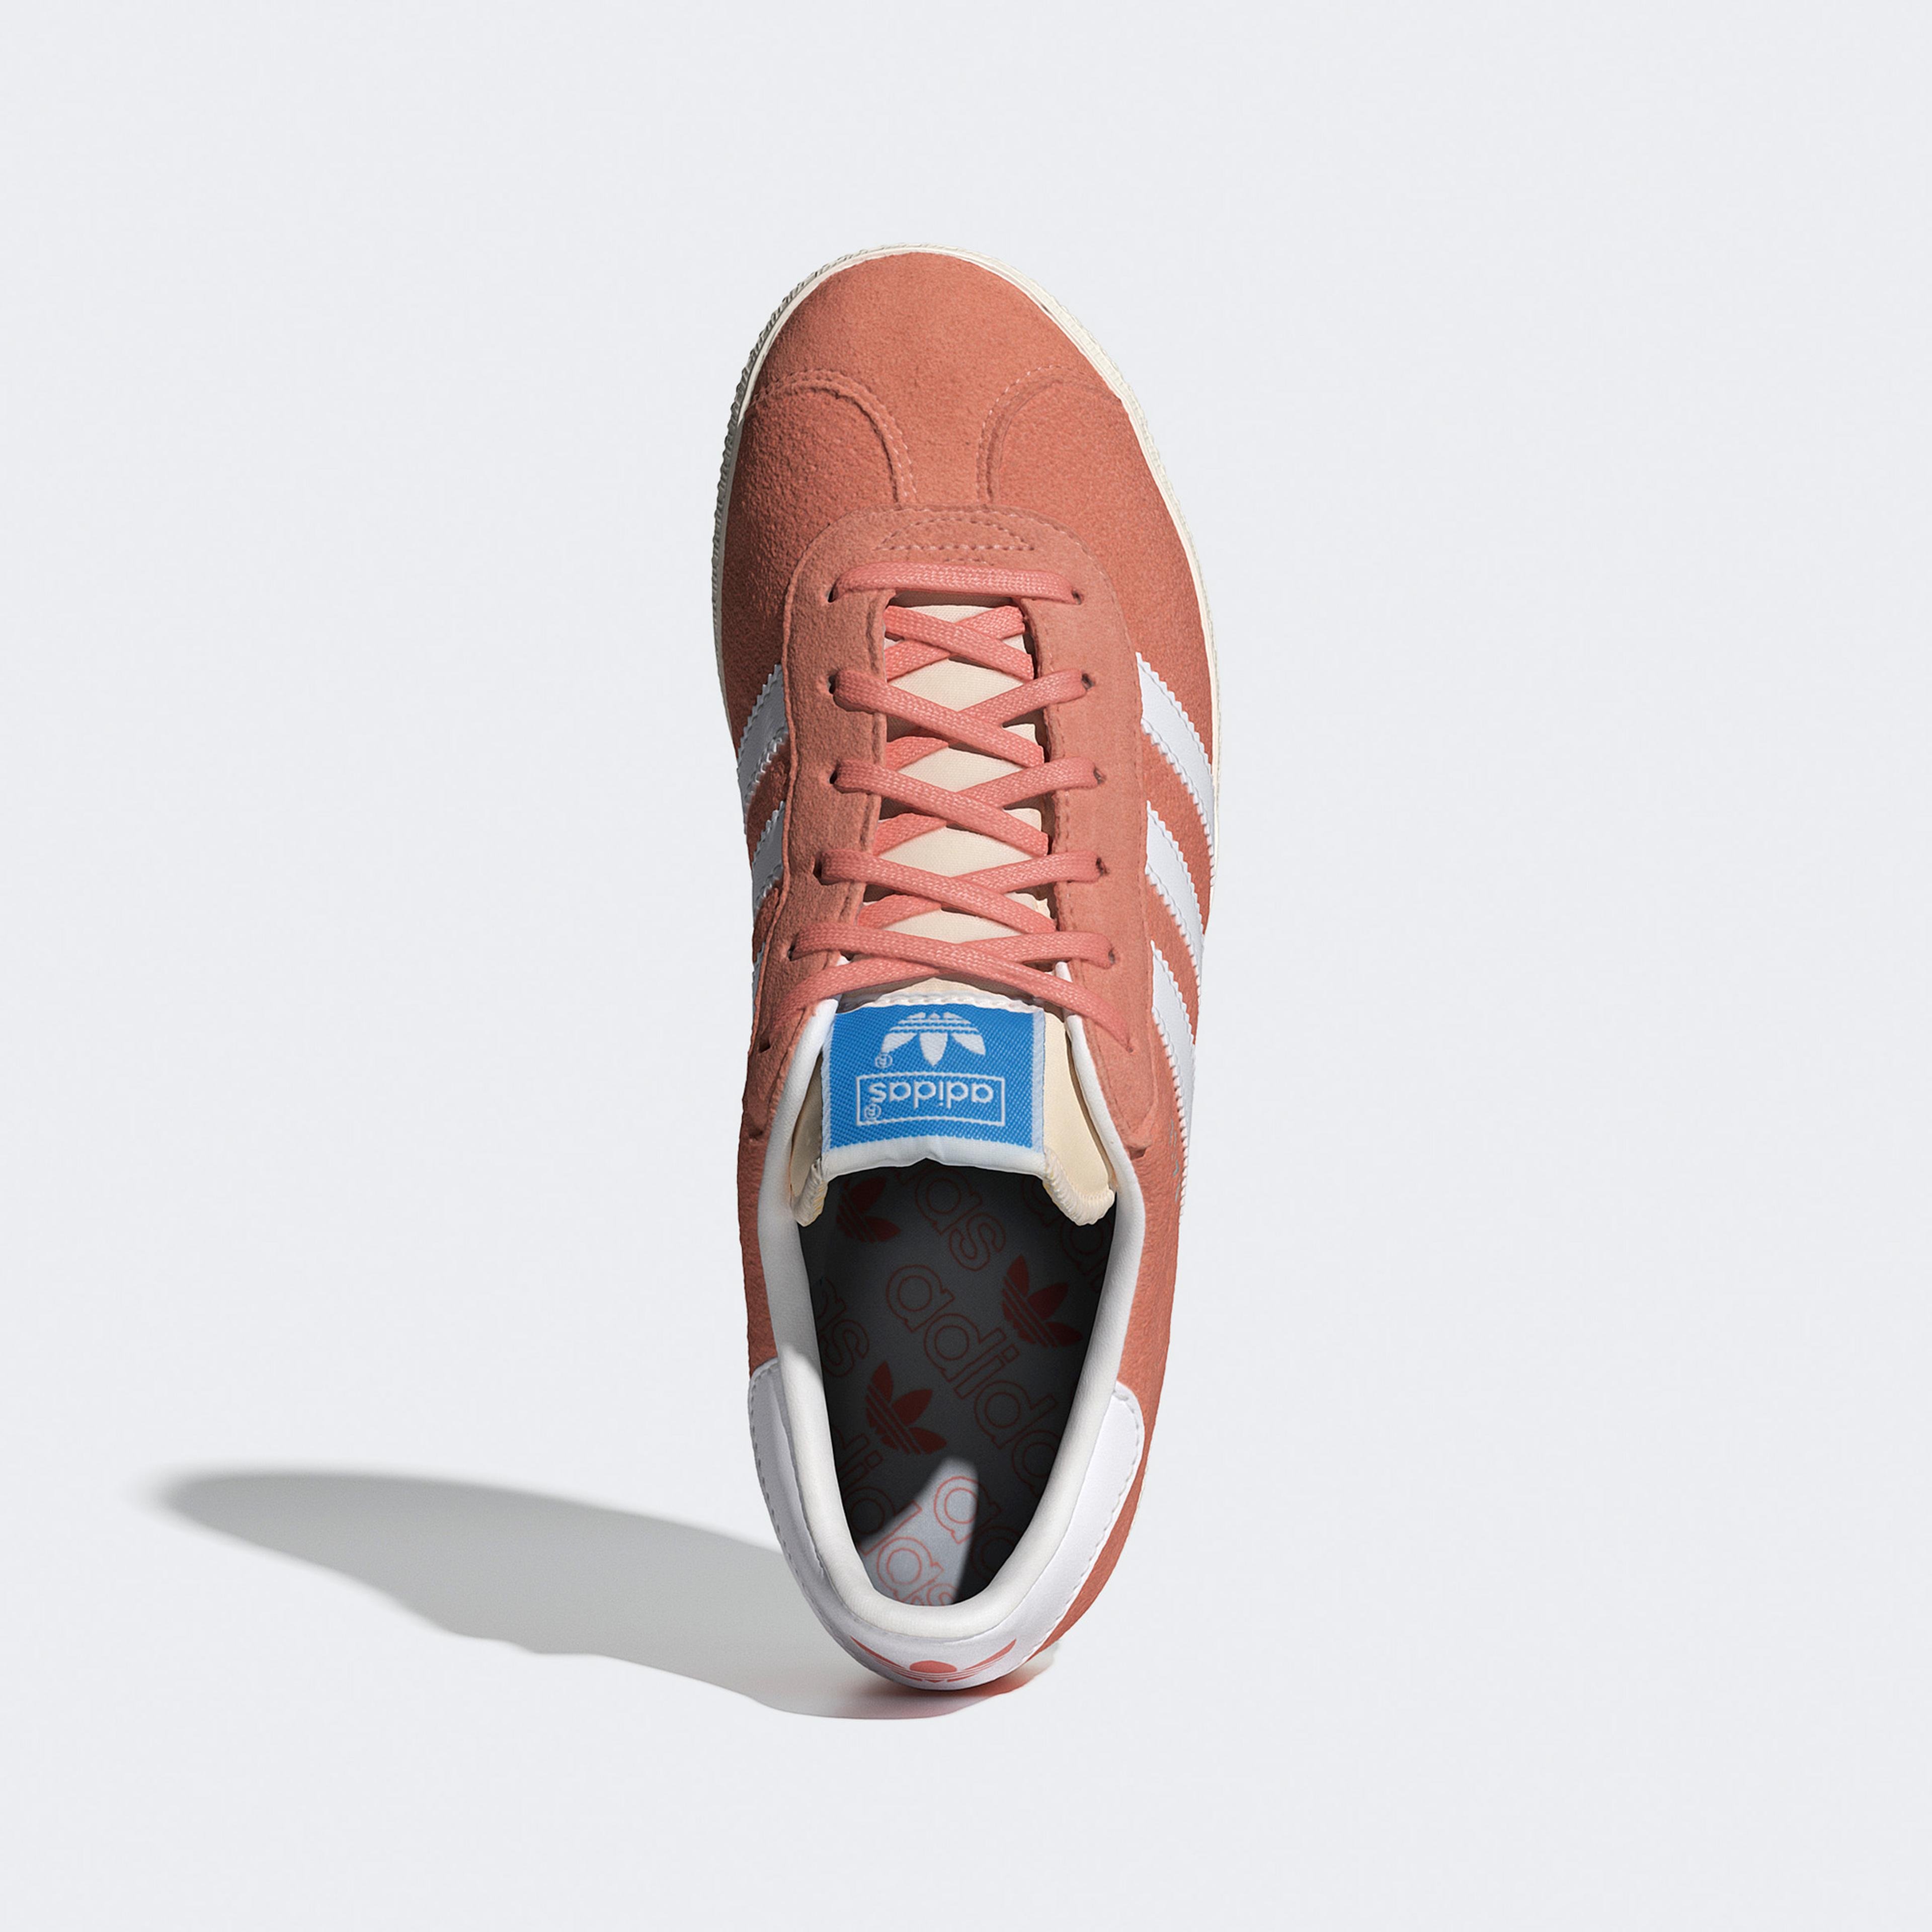 adidas Originals Gazelle Kadın Kırmızı Spor Ayakkabı